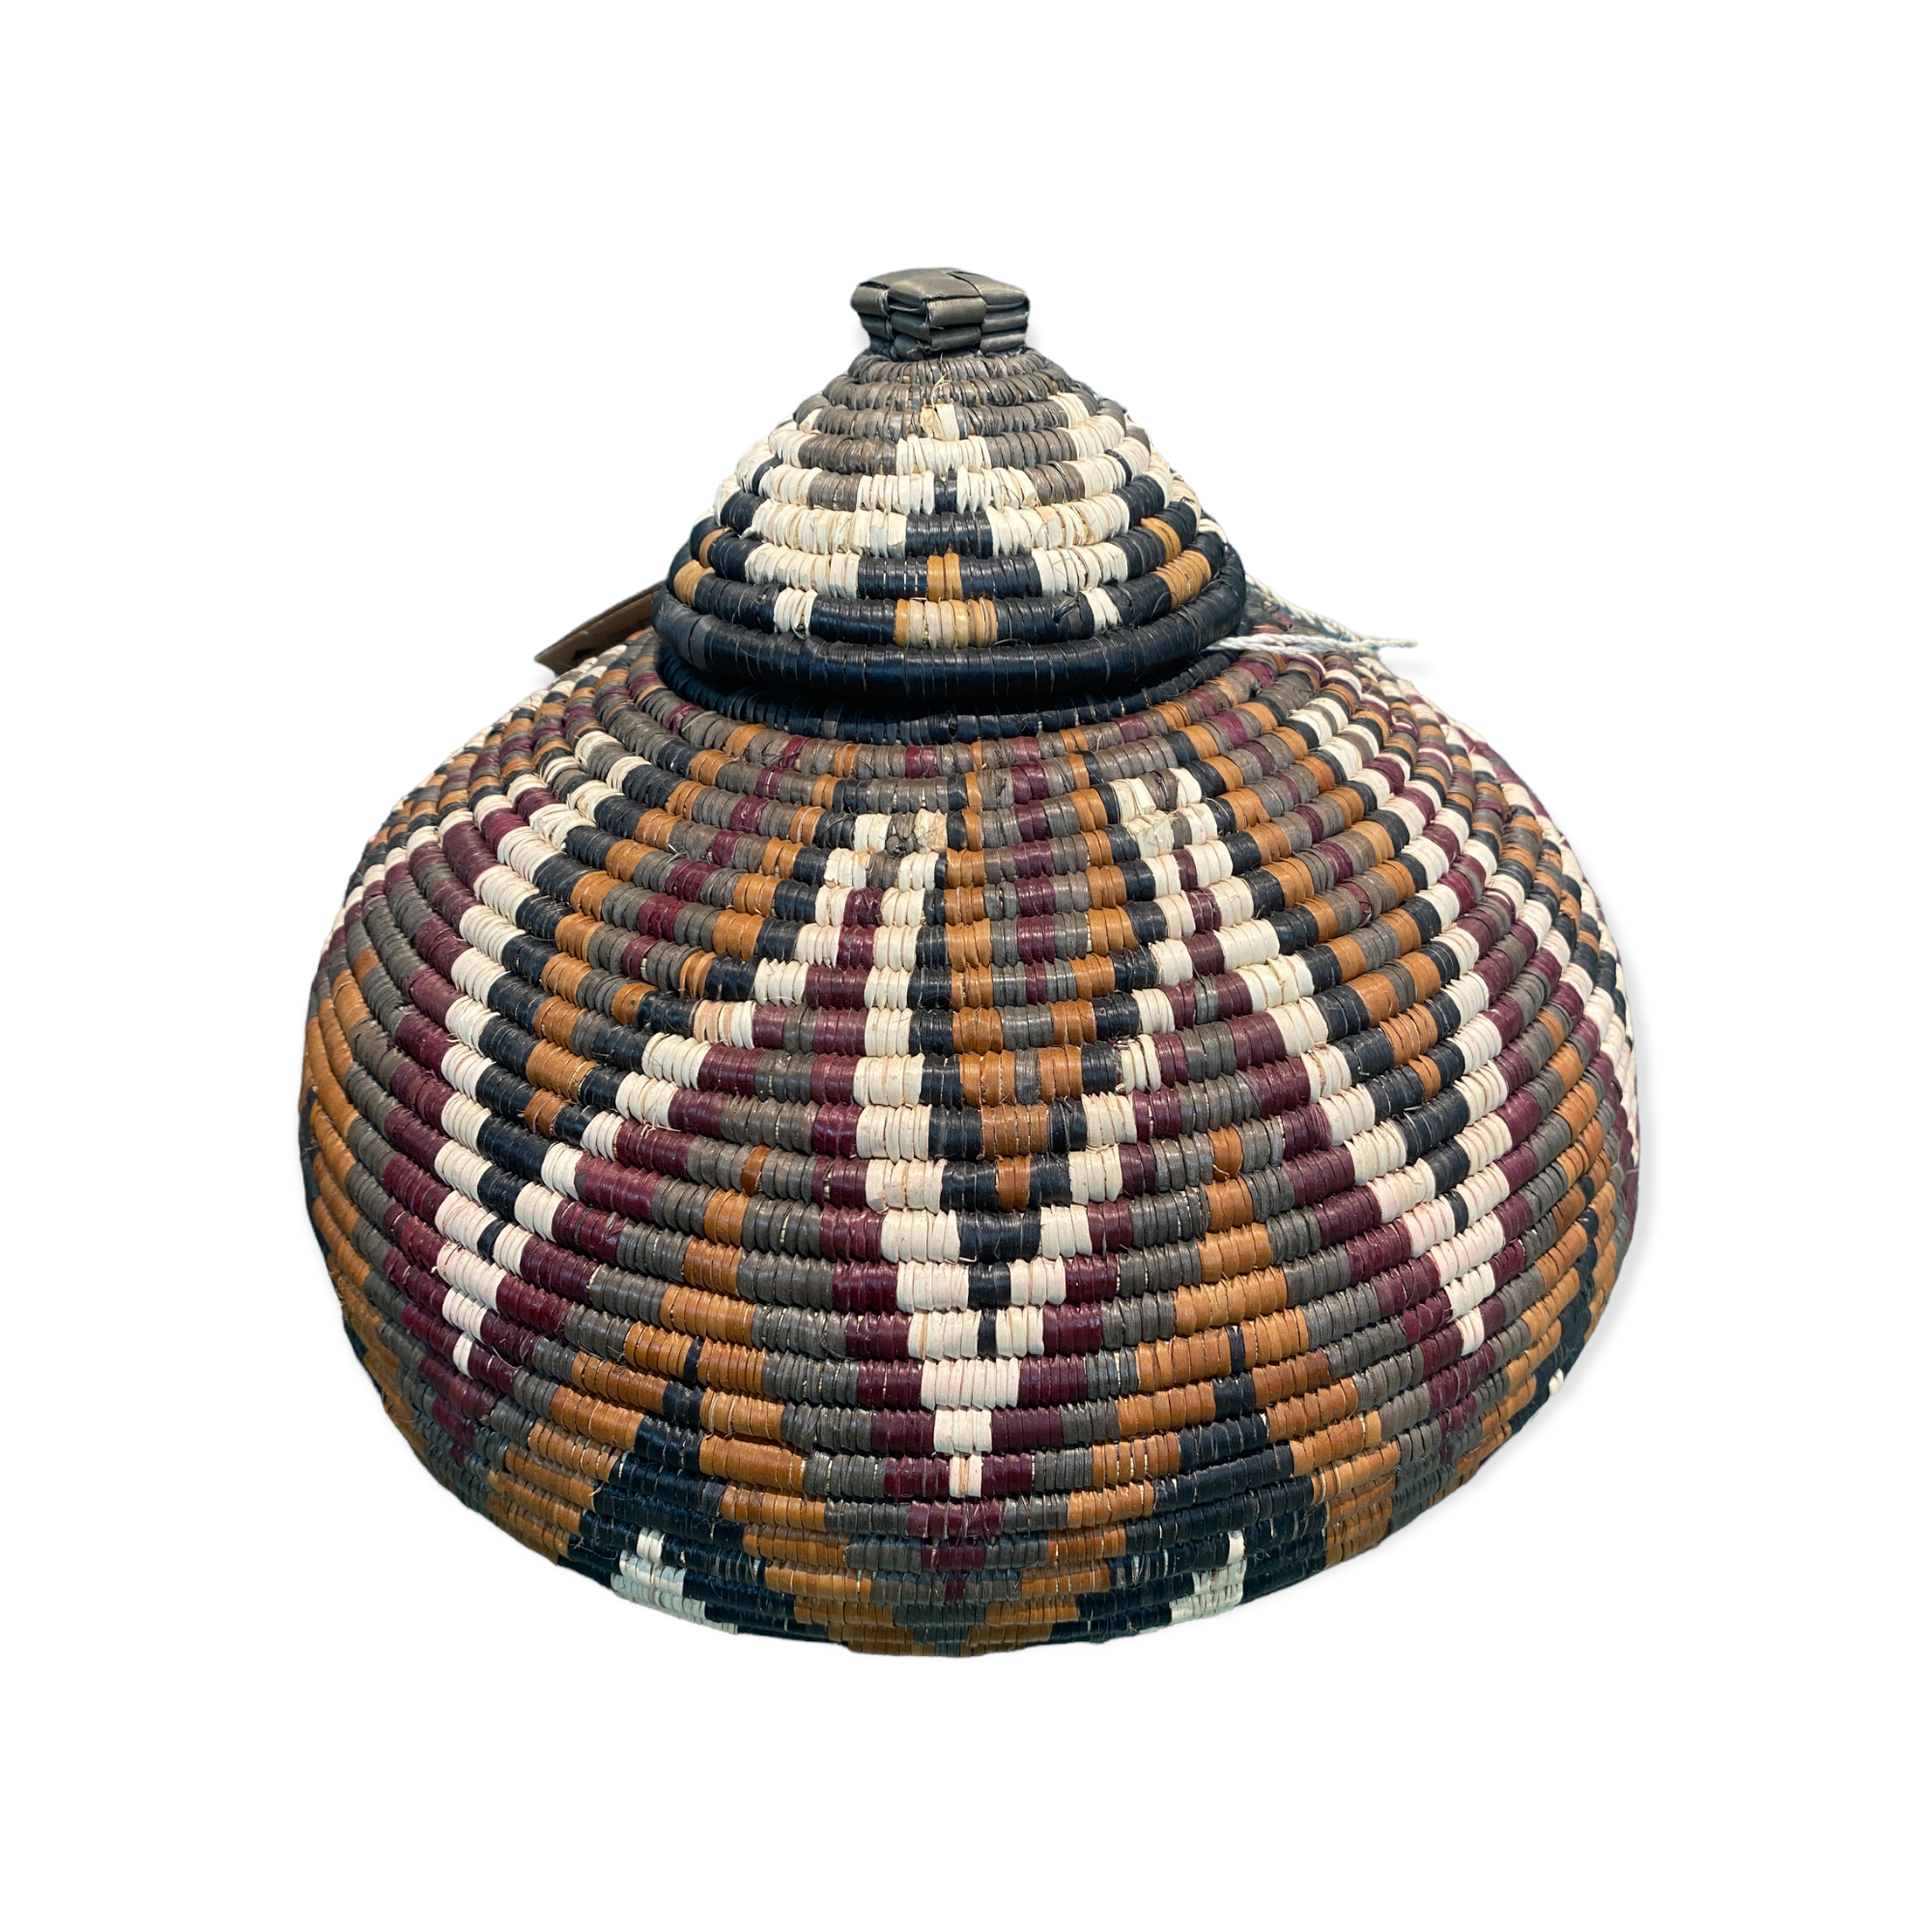 botanicalboysuk Zulu Ukhamba - Traditional Basket (22.1)